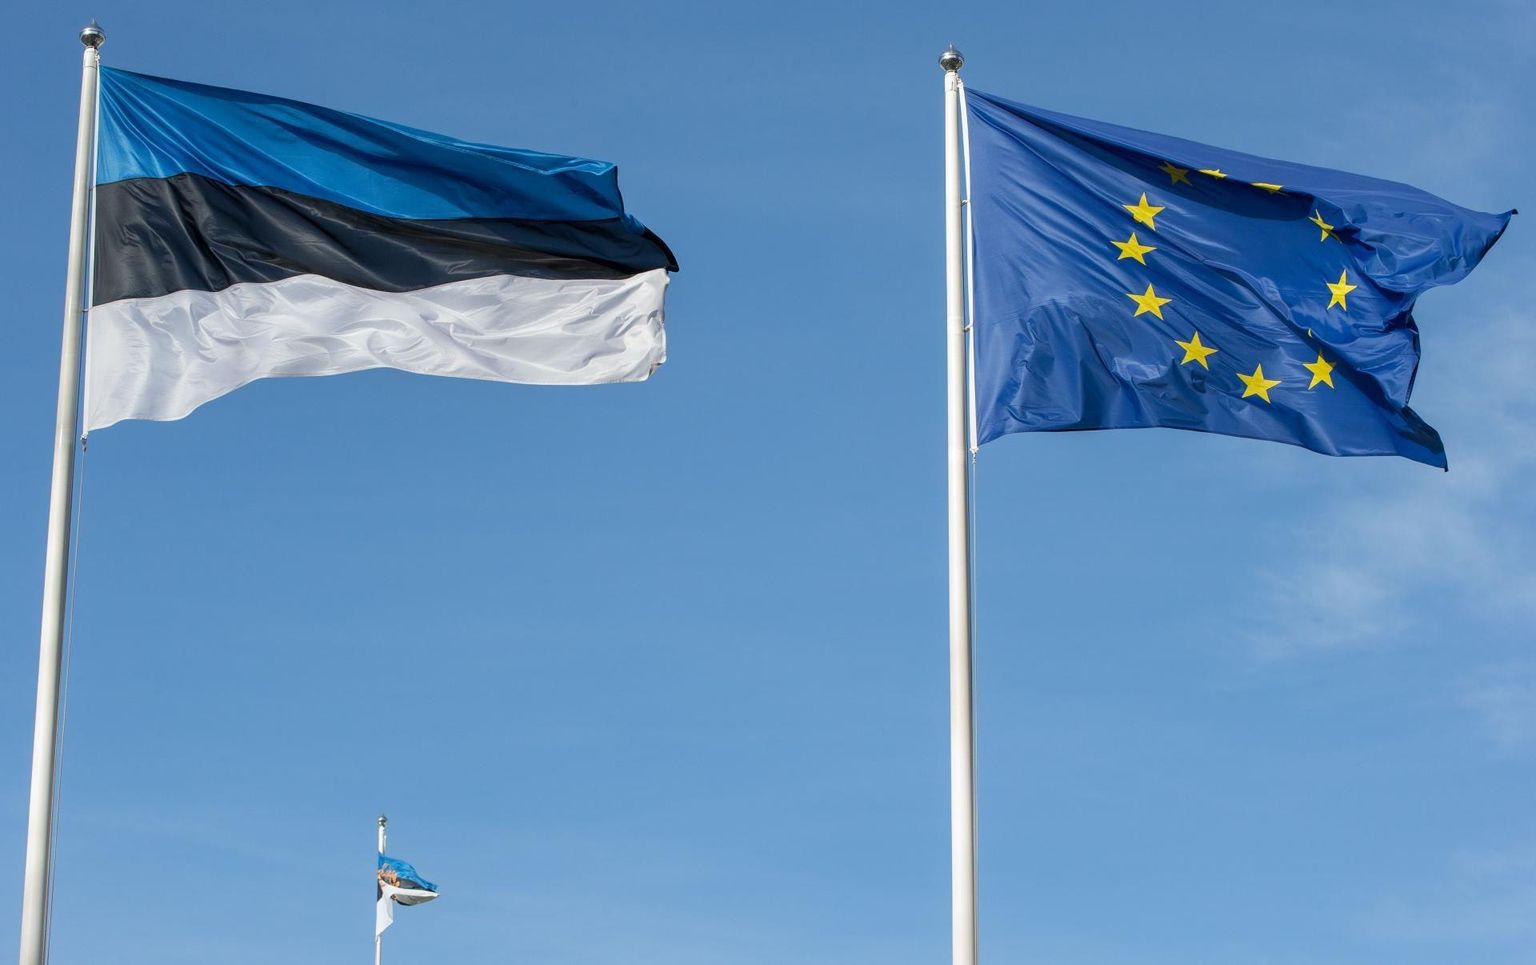 Eesti esitas Euroopa Liidule ametliku liitumistaotluse 1995. aastal ning võeti ühenduse liikmeks 2004. aastal.